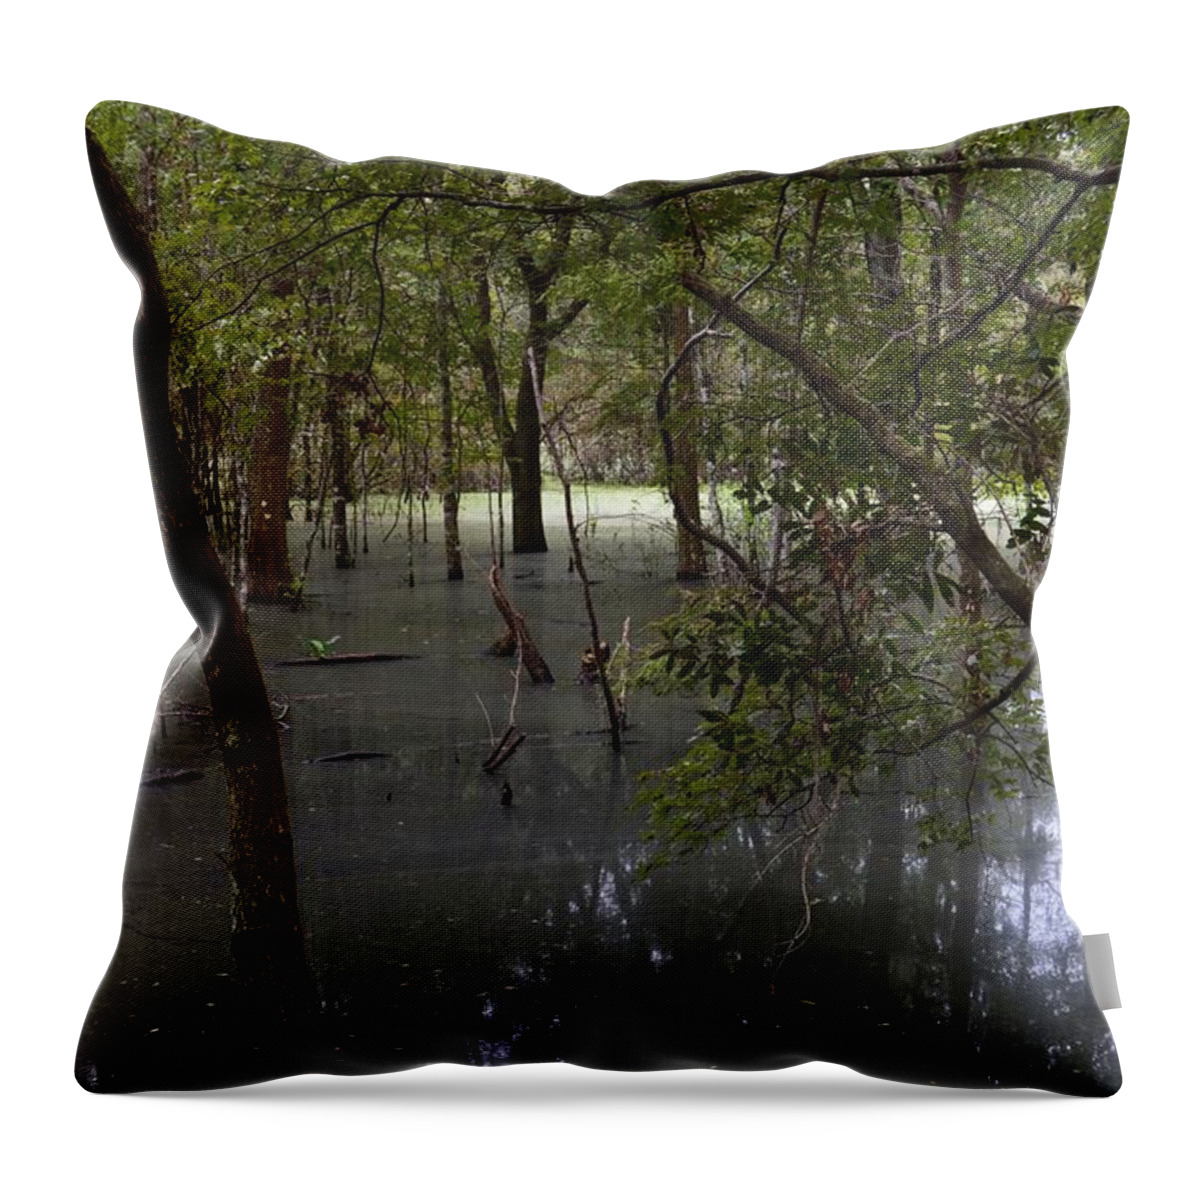 Swamp Haze Throw Pillow featuring the photograph Swamp Haze by Warren Thompson